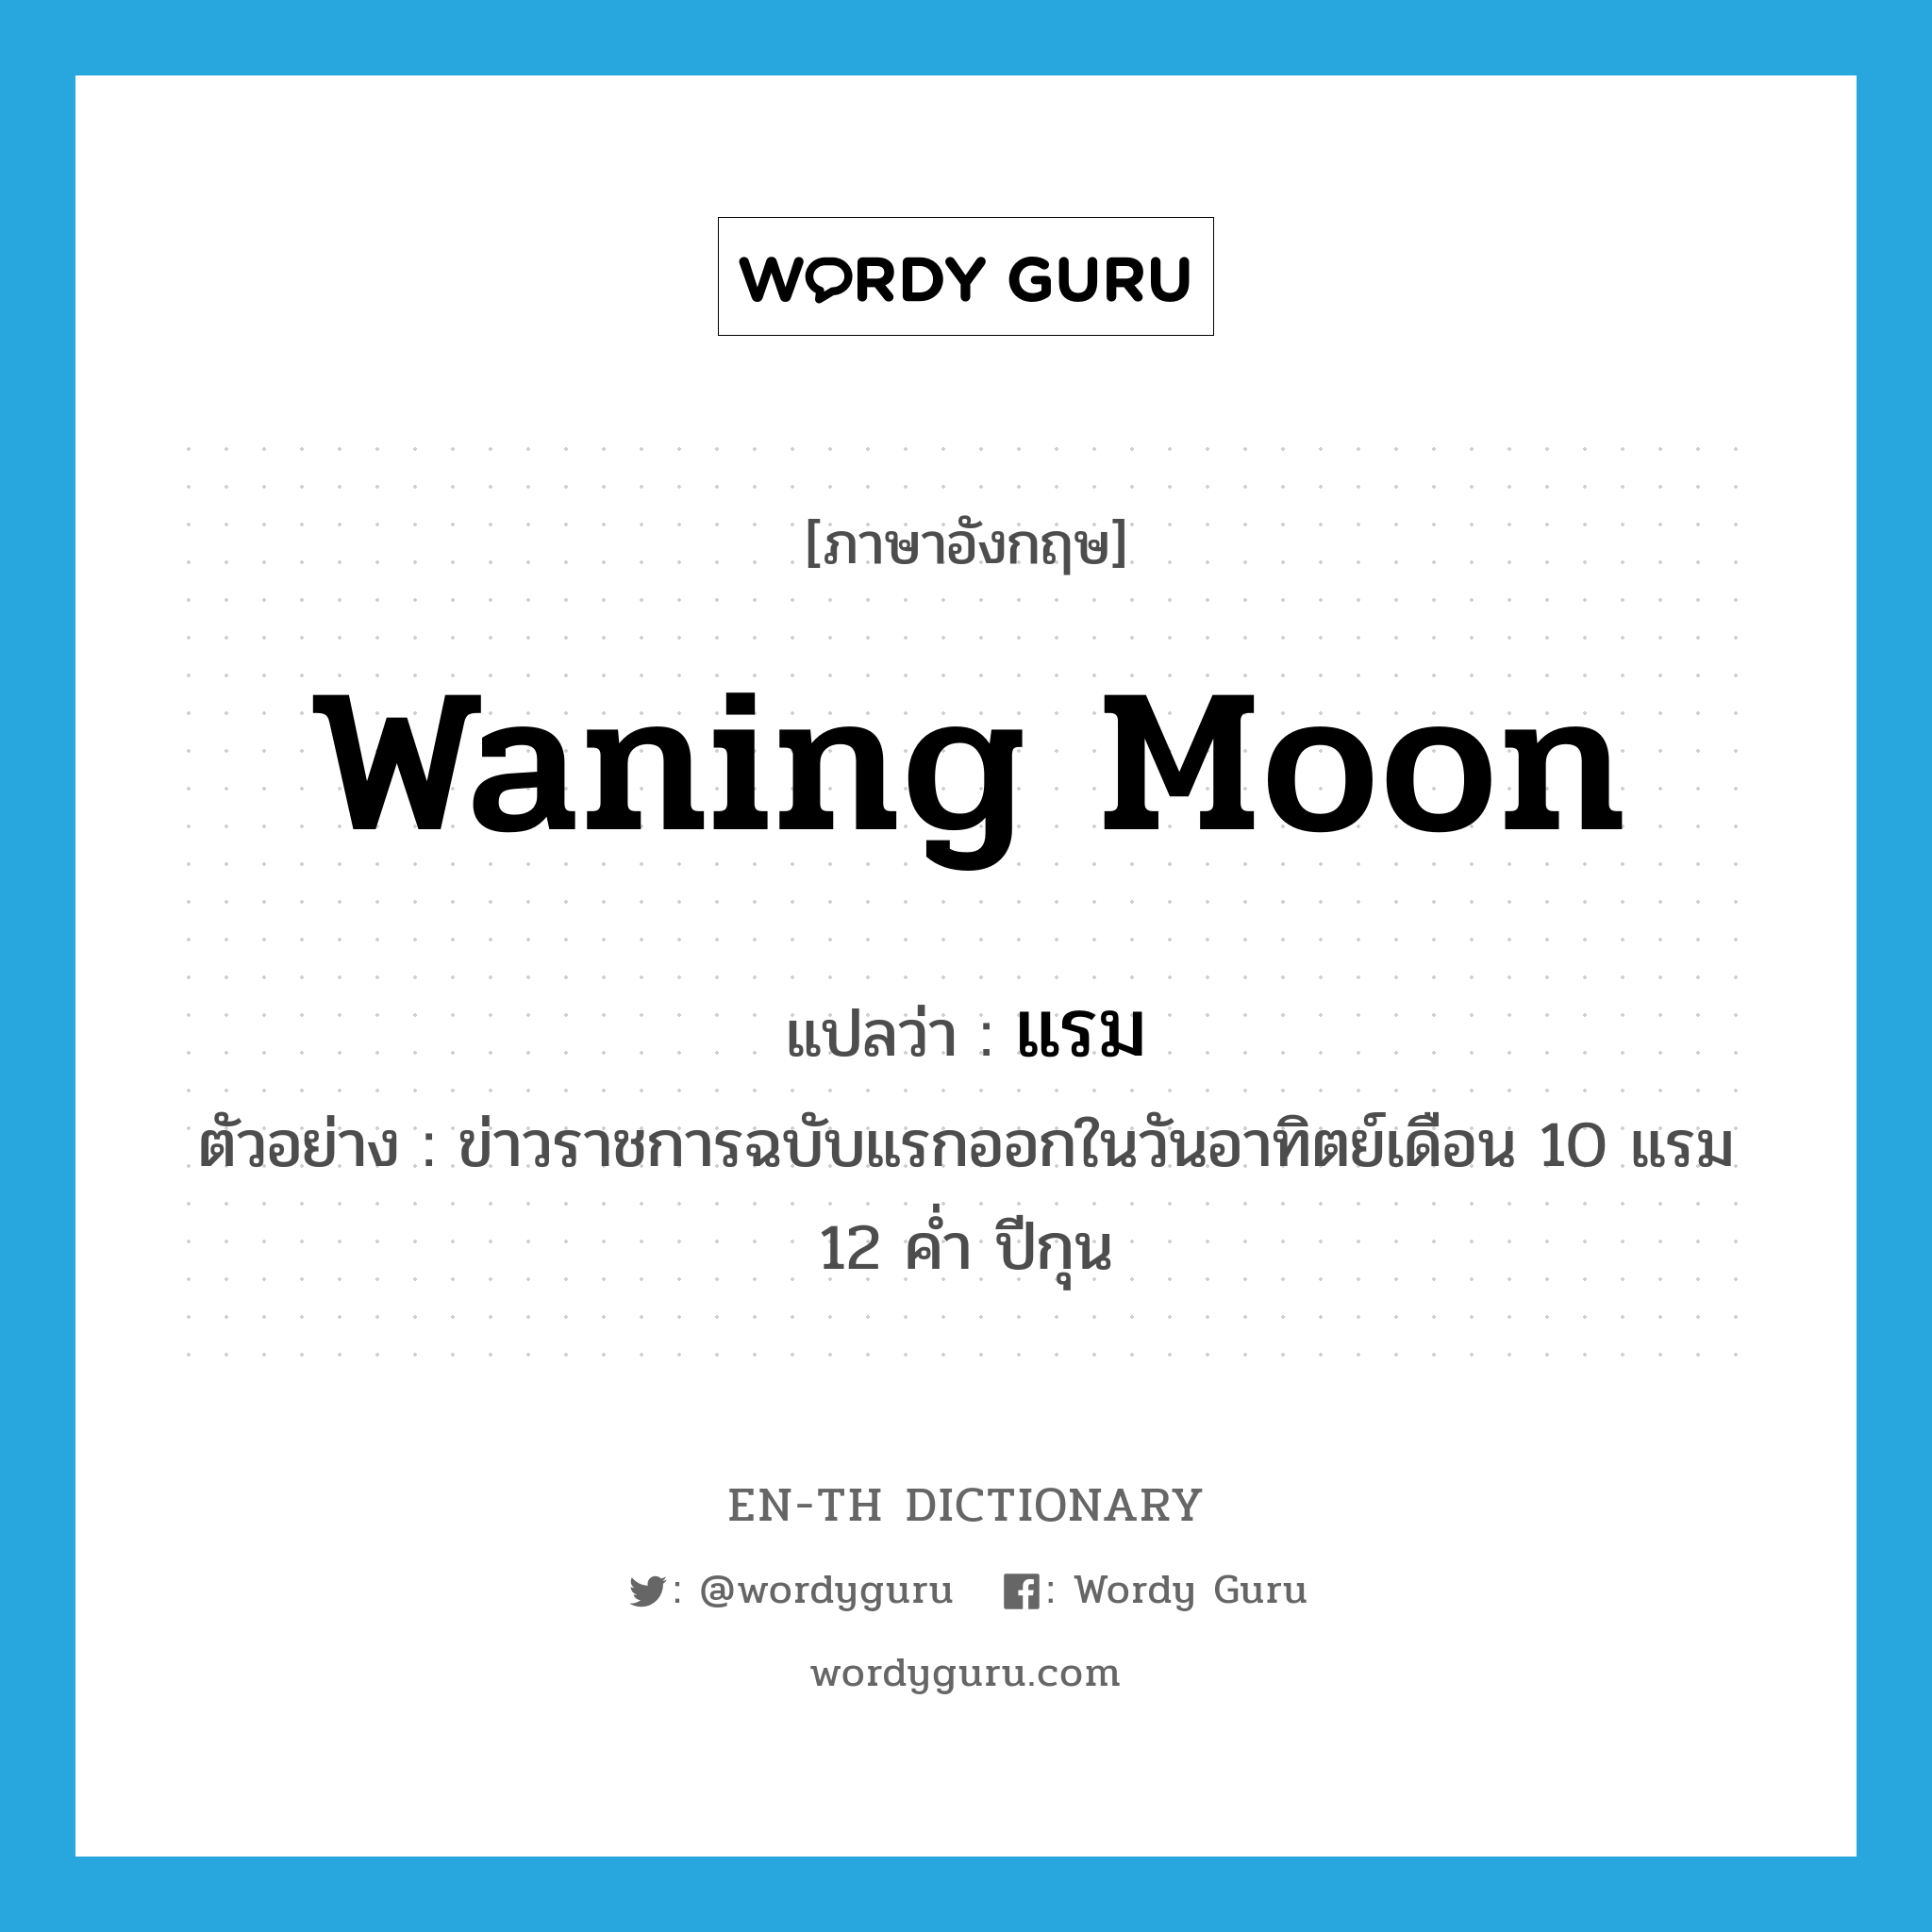 waning moon แปลว่า?, คำศัพท์ภาษาอังกฤษ waning moon แปลว่า แรม ประเภท N ตัวอย่าง ข่าวราชการฉบับแรกออกในวันอาทิตย์เดือน 10 แรม 12 ค่ำ ปีกุน หมวด N